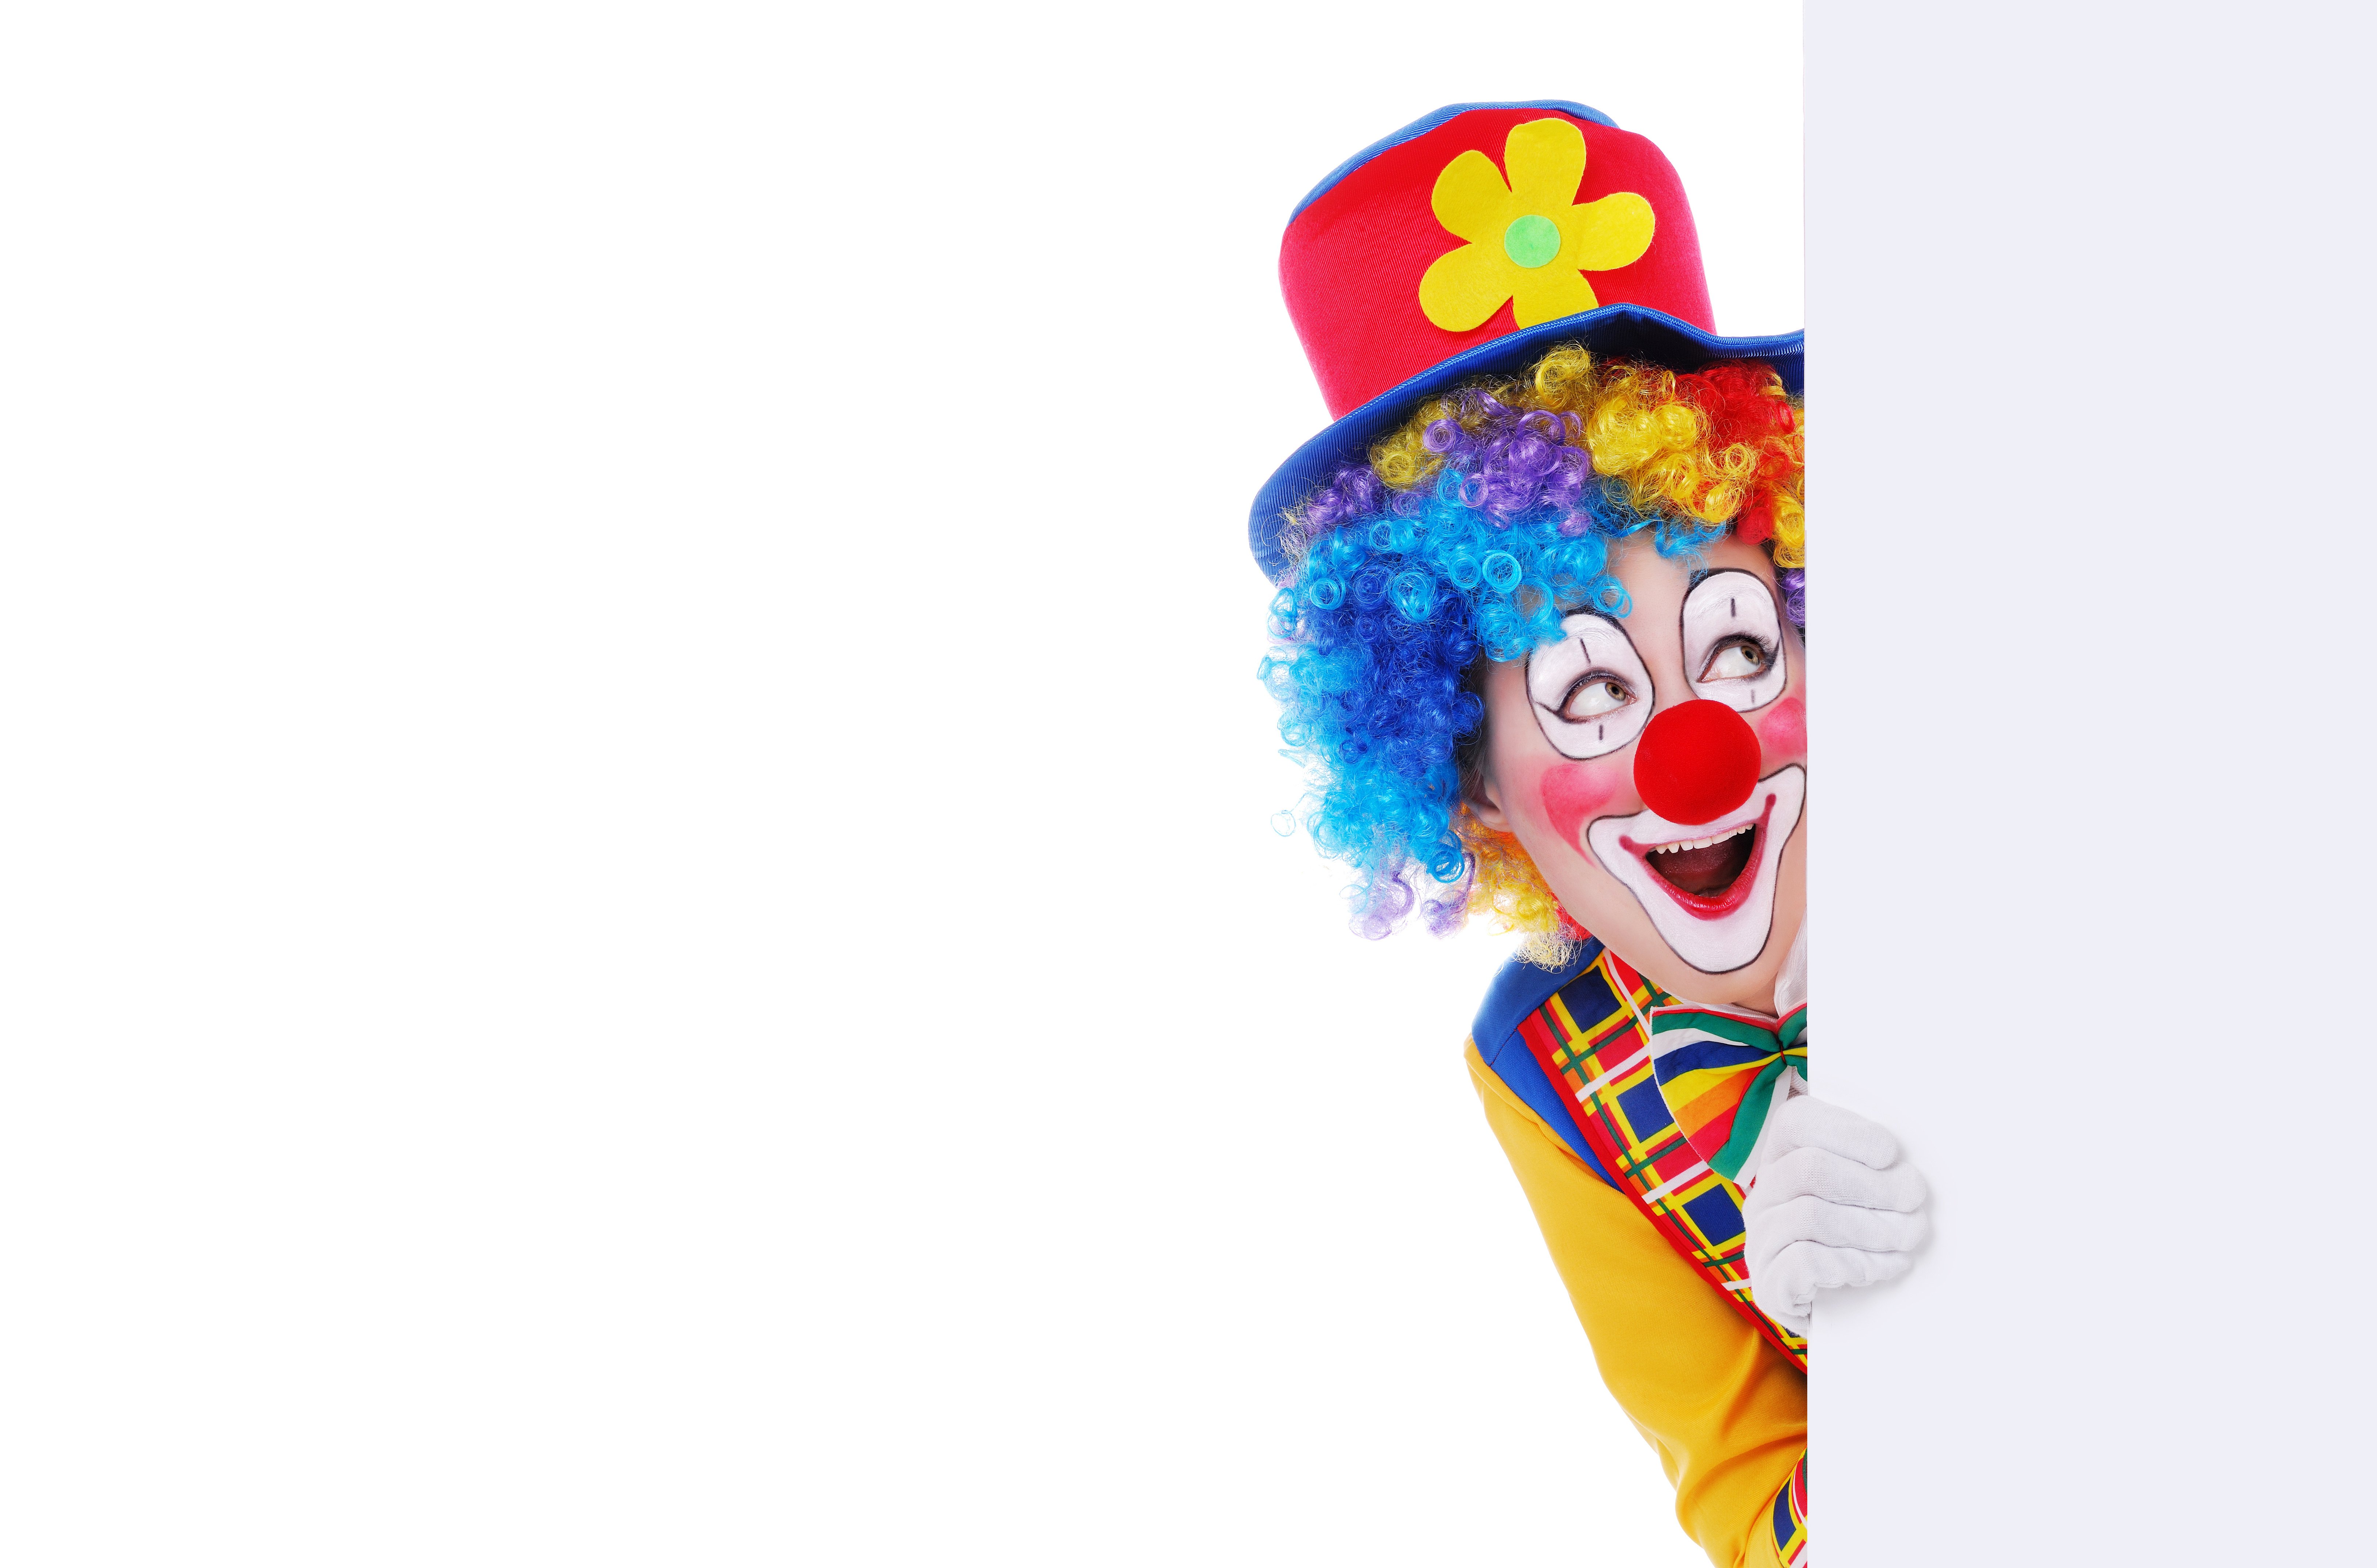 Получить бесплатный пин клоуна. Весёлые клоуны. Клоуны для детей. Красивый клоун. Улыбка клоуна.